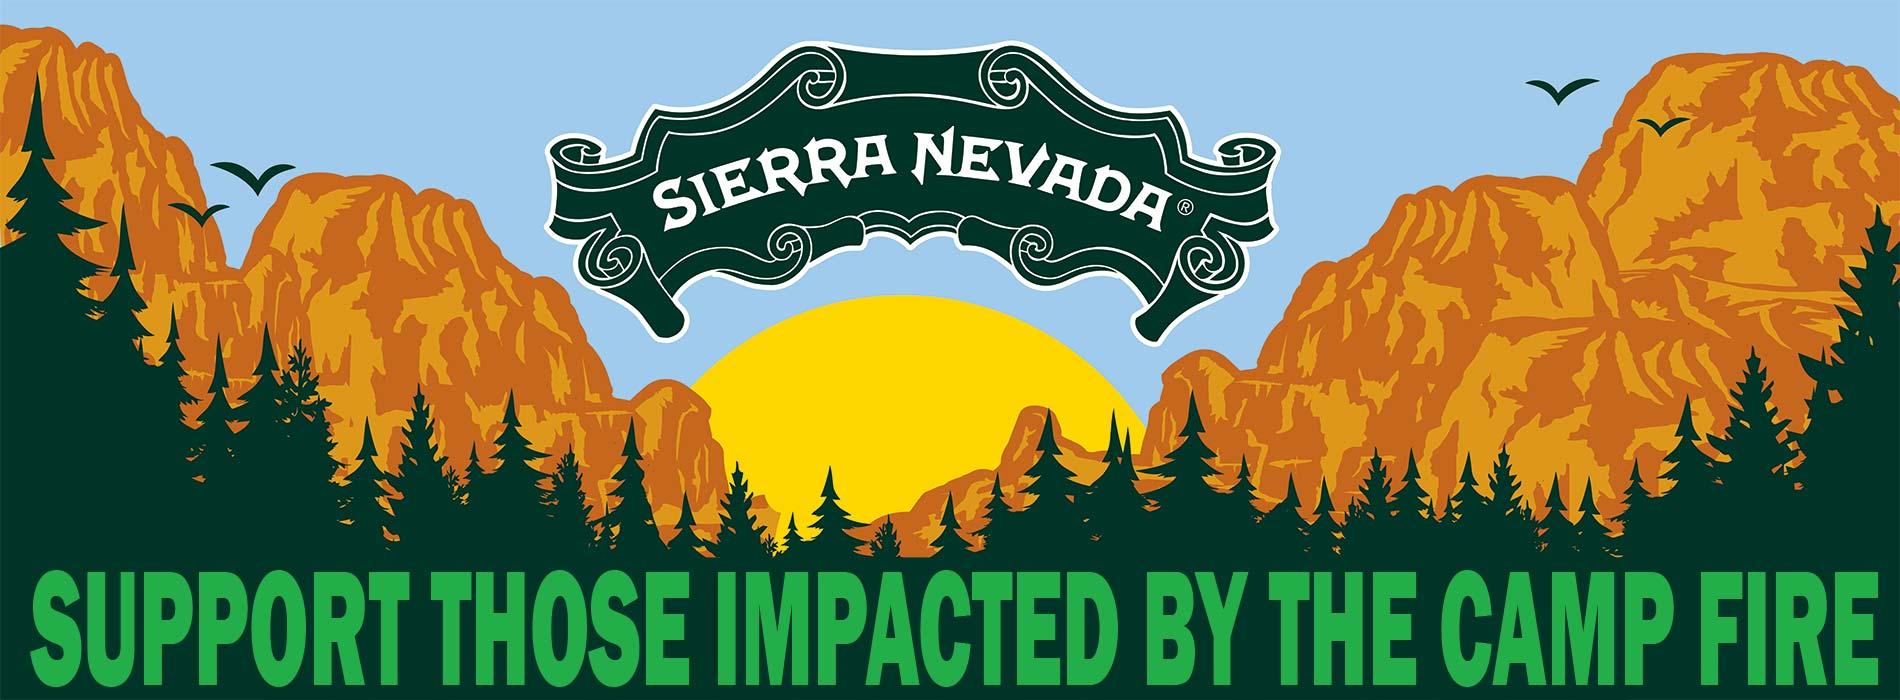 Sierra Nevada Brewery Logo - Sierra Nevada Brewing Co.